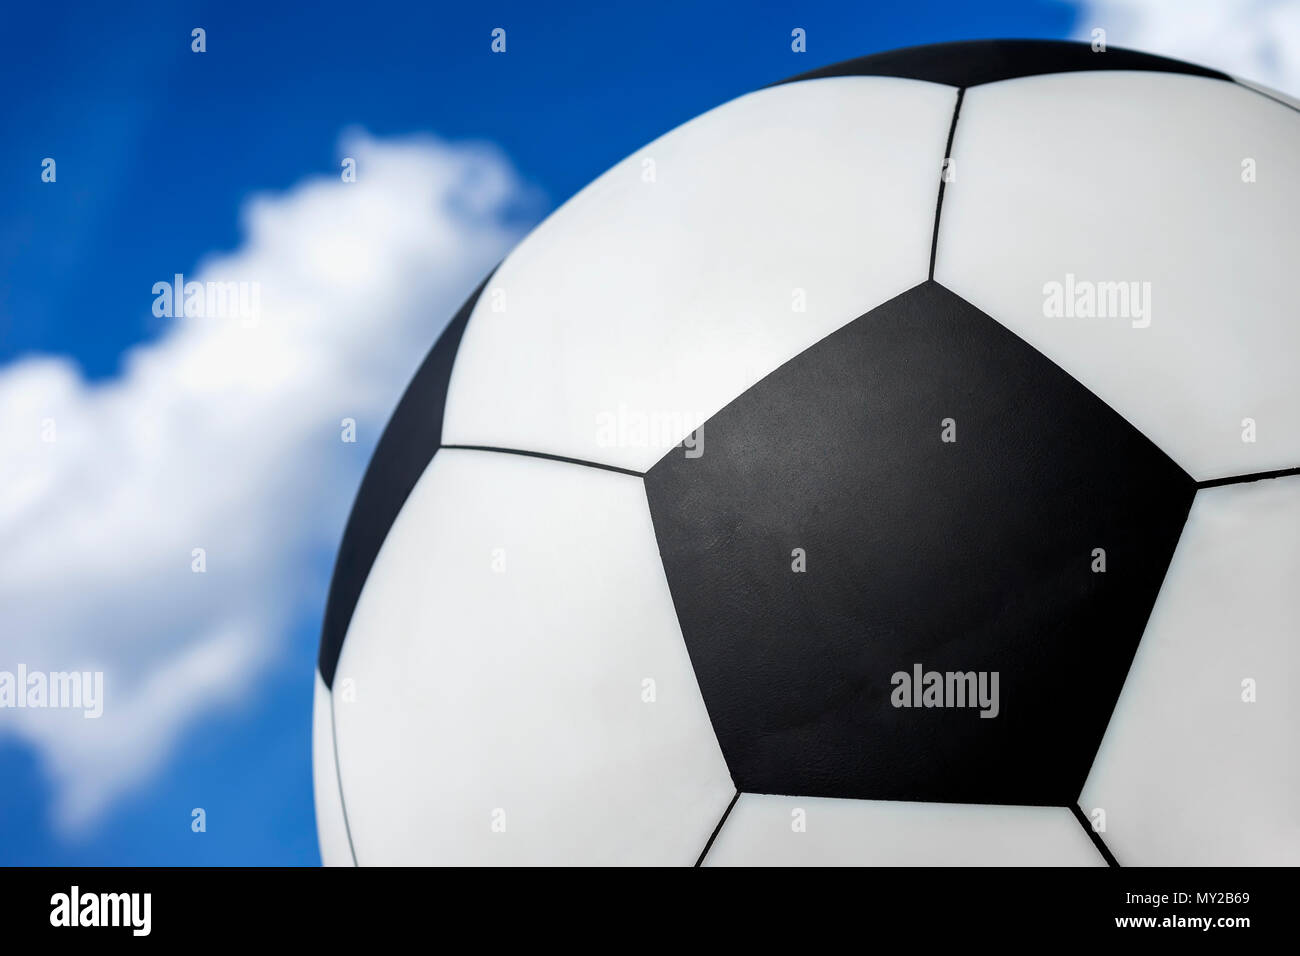 Ballon de soccer contre le ciel bleu avec des nuages blancs, la texture, l'arrière-plan Banque D'Images